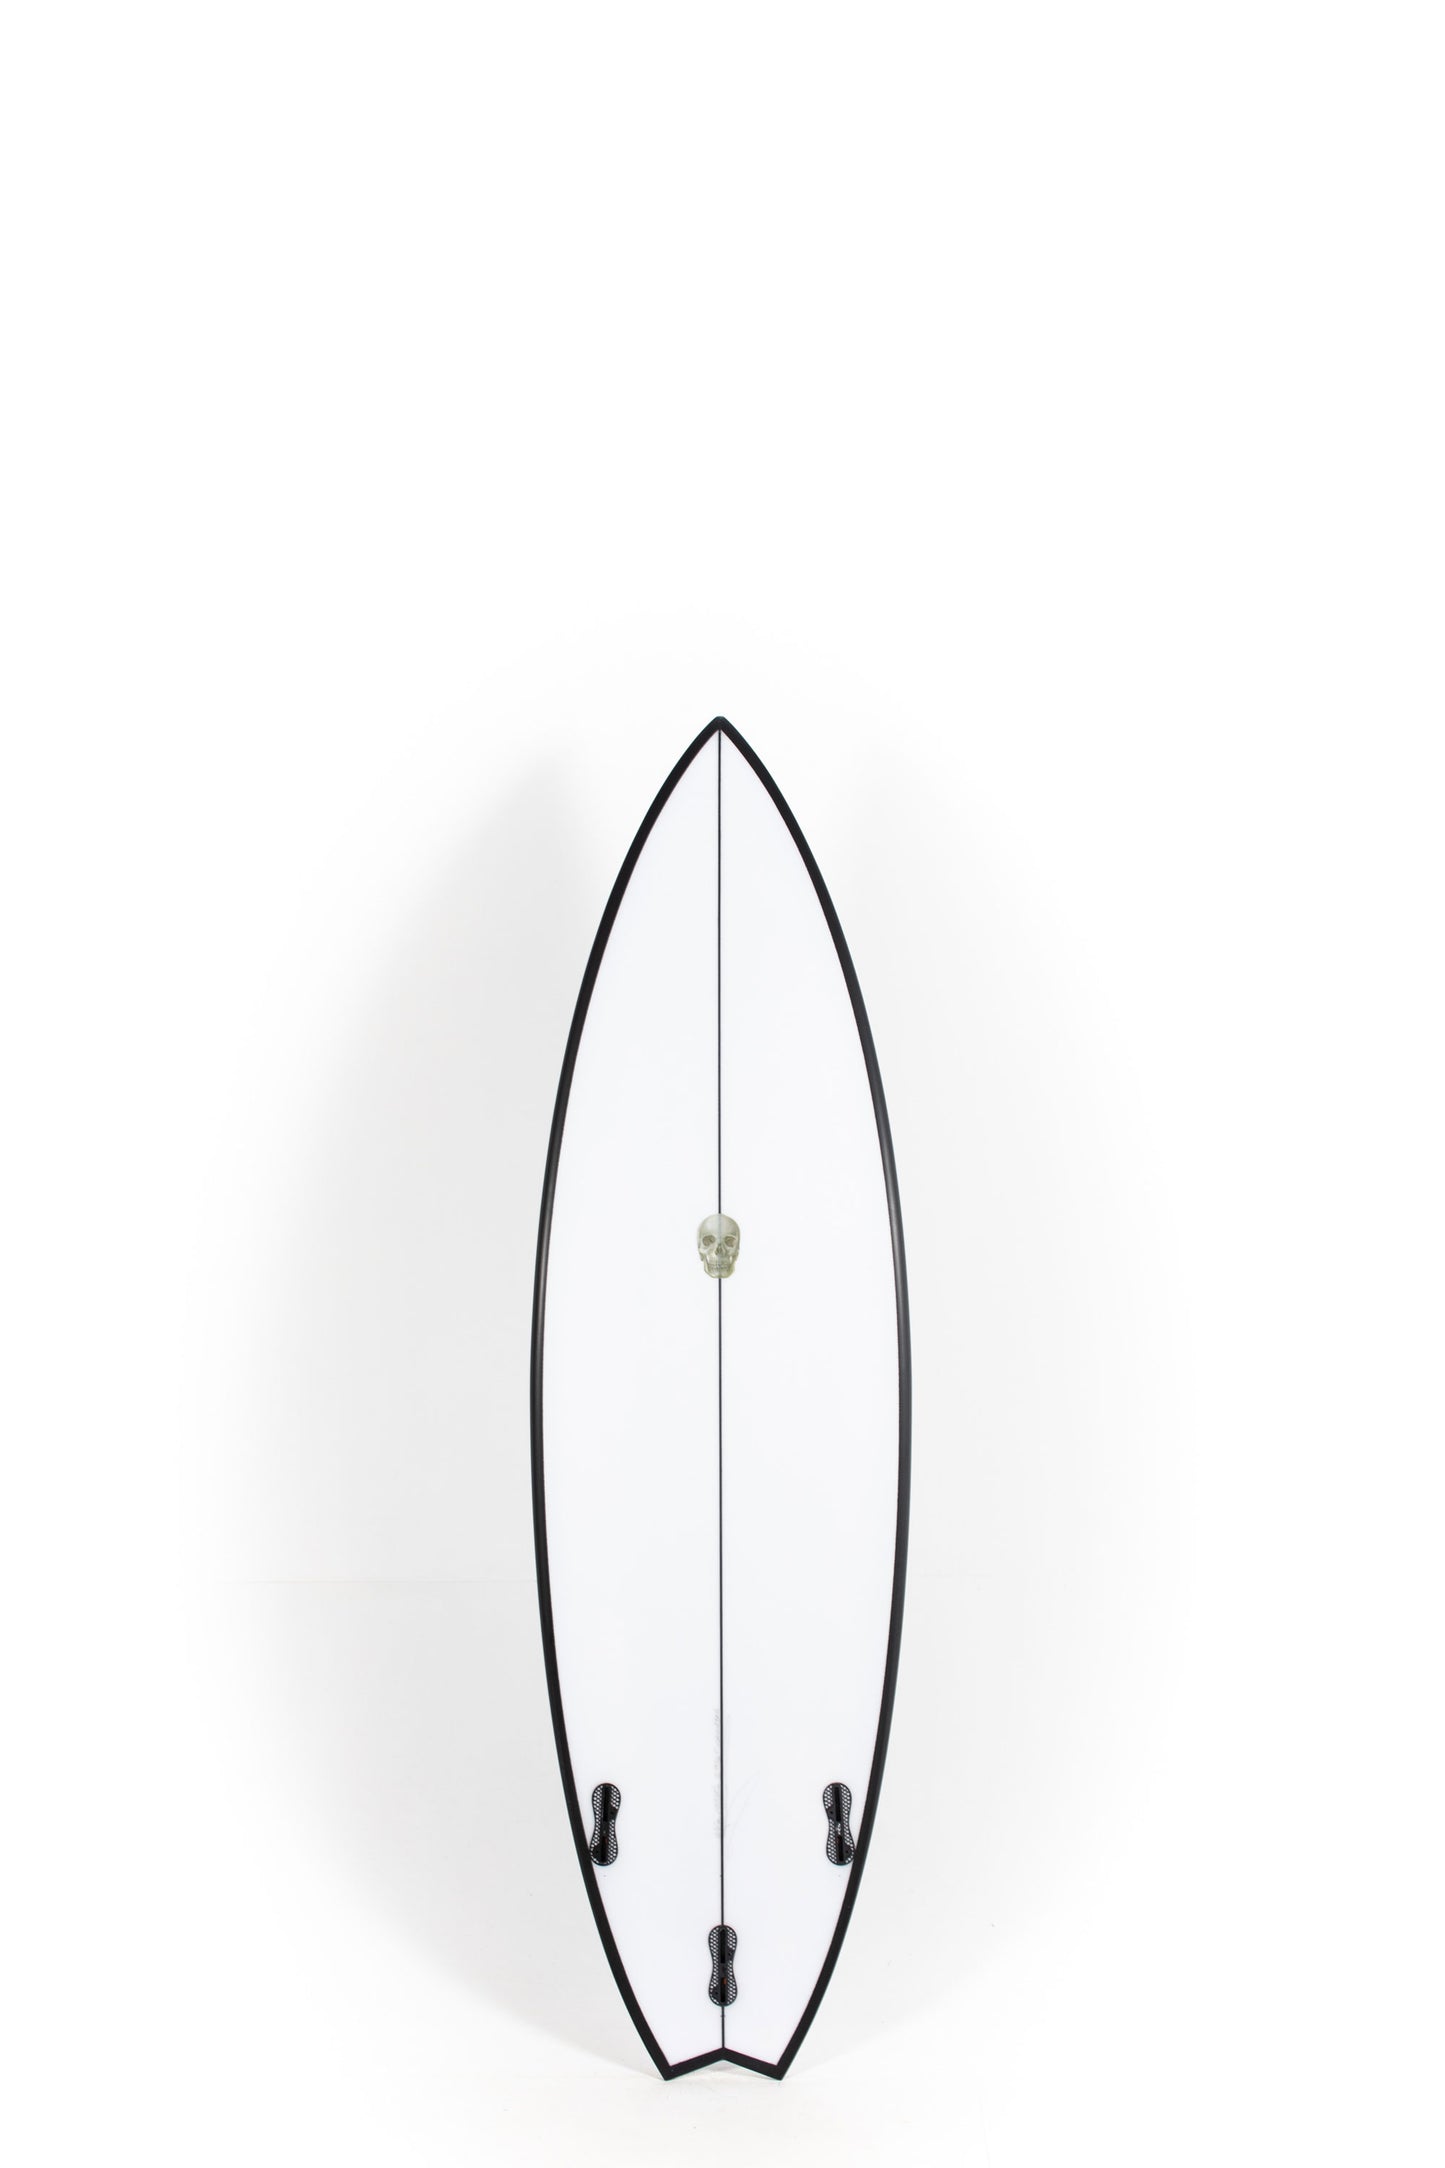 Pukas Surf Shop - Christenson Surfboards - OP3 - 6'0" x 19 3/4 x 2 9/16 x 31.73L - CX04814